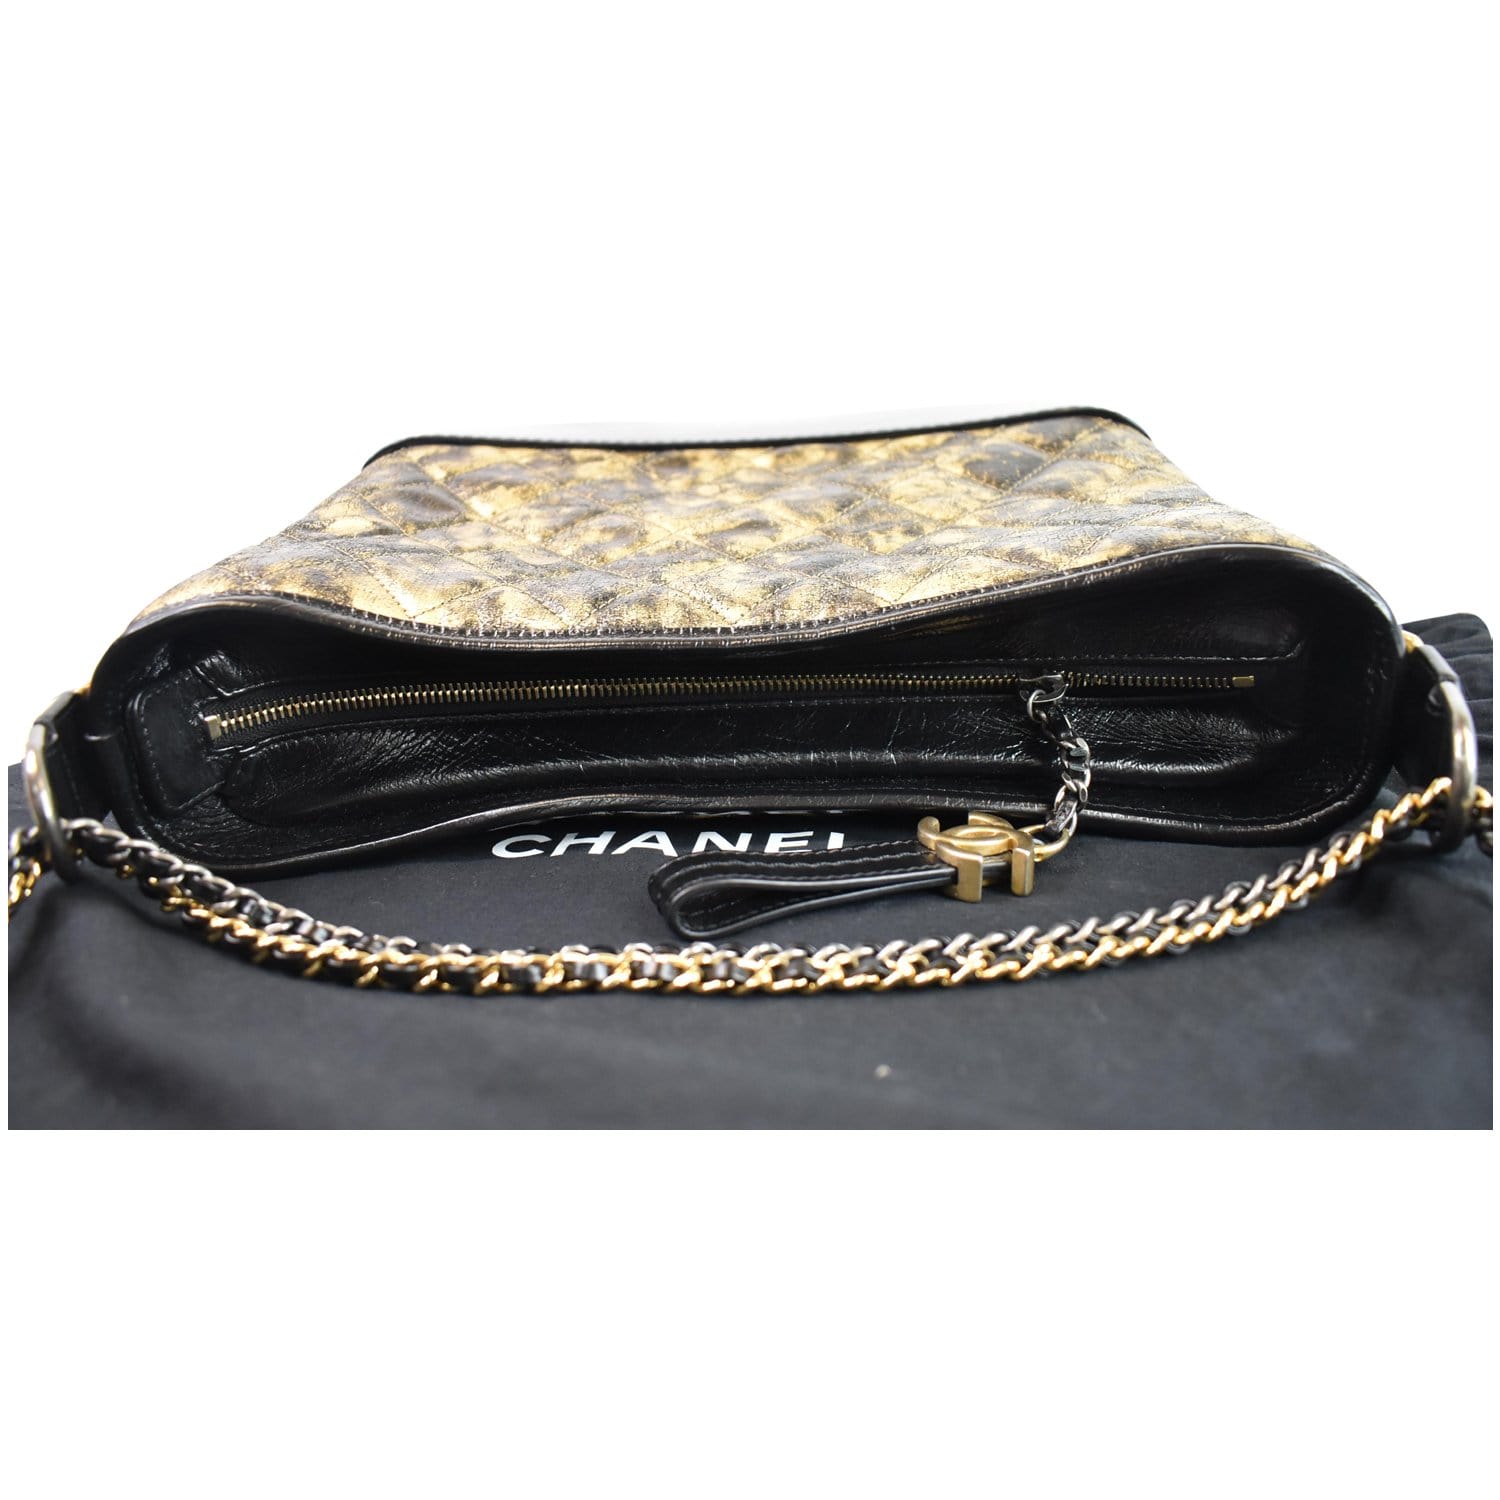 Chanel Crinkled Calfskin Reissue Camera Bag in Black